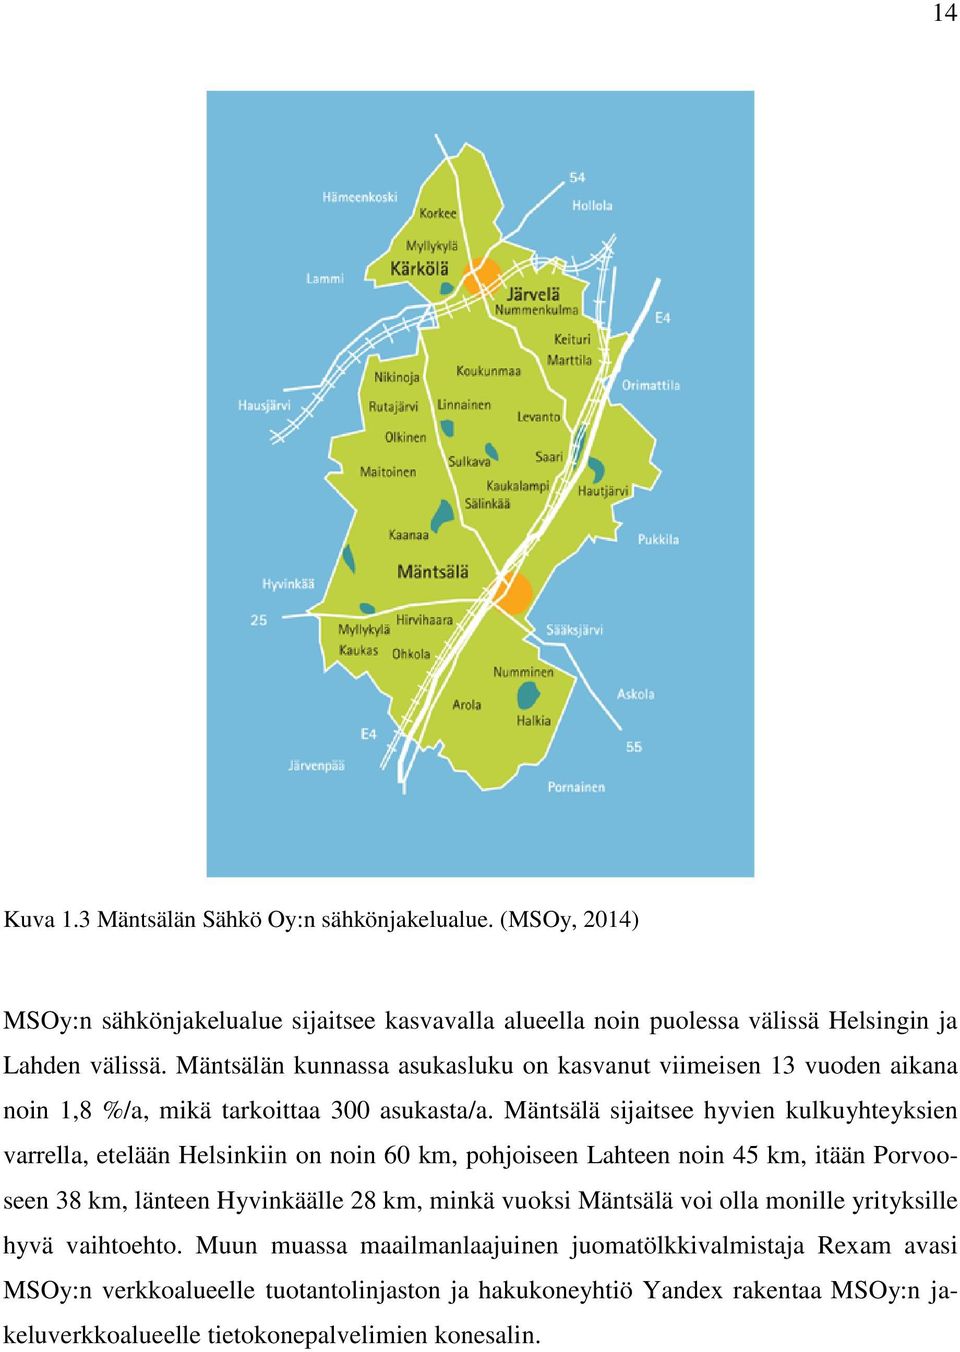 Mäntsälä sijaitsee hyvien kulkuyhteyksien varrella, etelään Helsinkiin on noin 60 km, pohjoiseen Lahteen noin 45 km, itään Porvooseen 38 km, länteen Hyvinkäälle 28 km, minkä